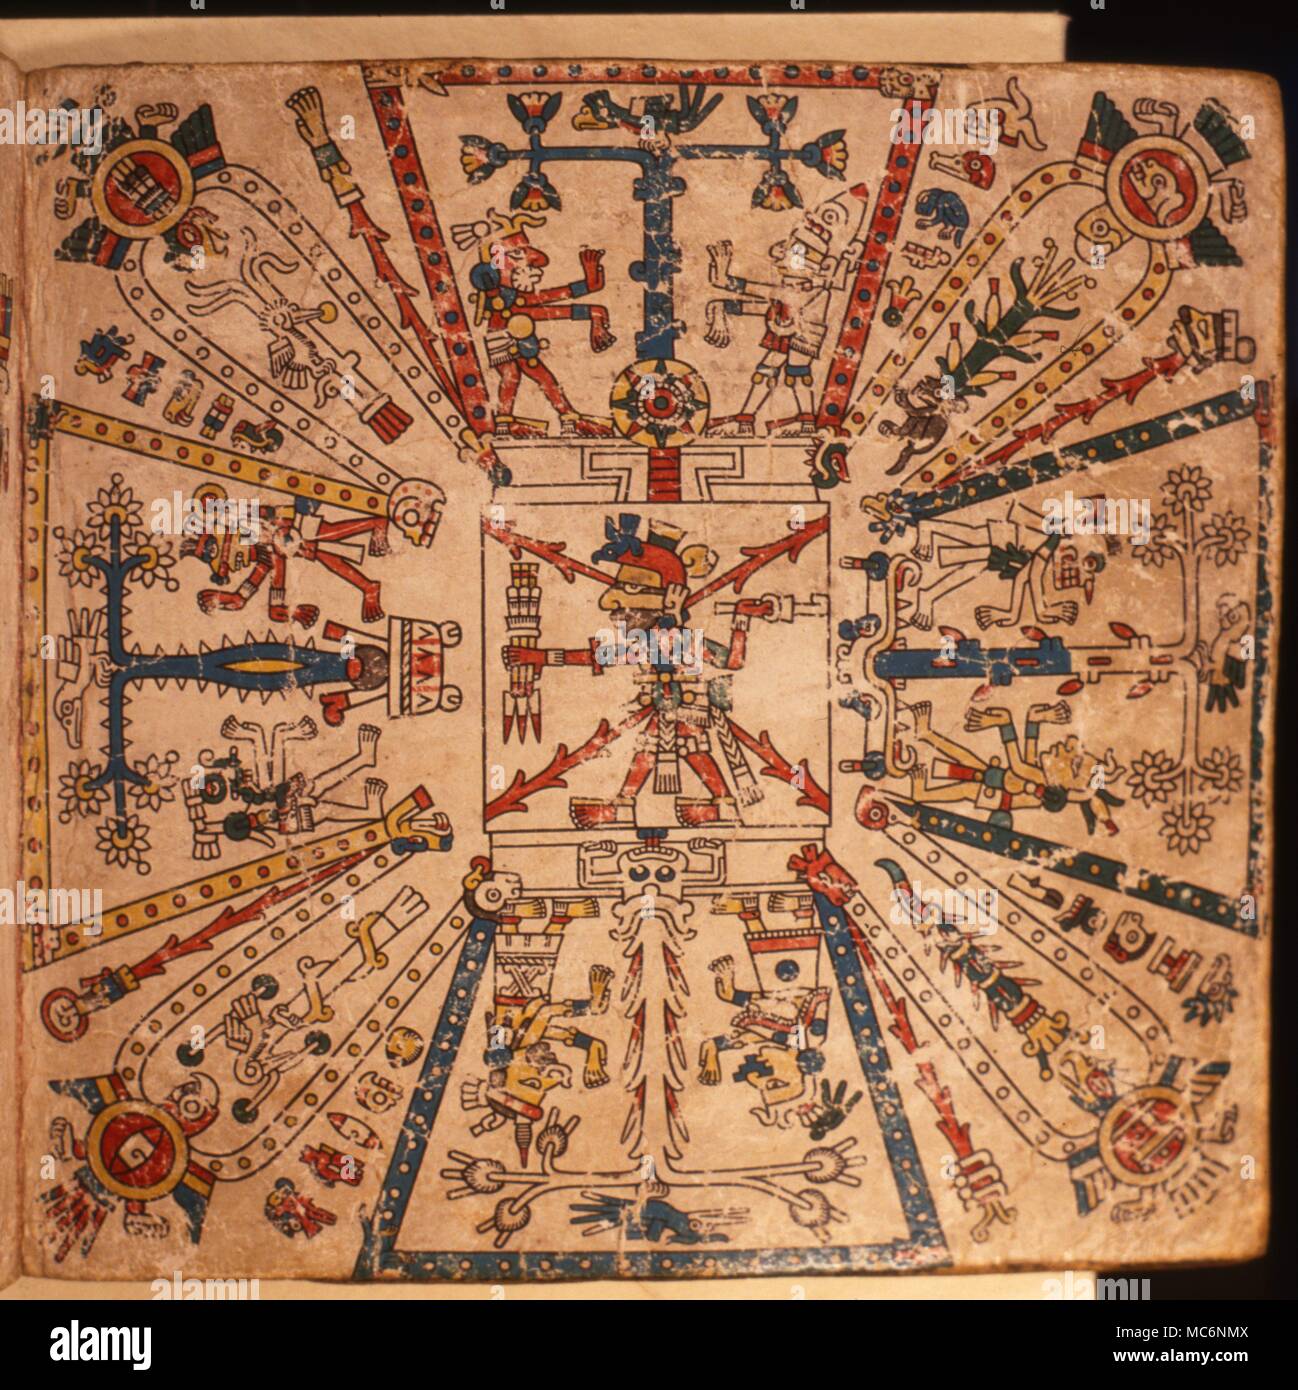 Le feu-dieu du panthéon aztèque nourris du sang des sacrifices. Chaque direction de l'espace est symbolisé par un ree, sur lequel est un oiseau, flanquée par les dieux des directions. Banque D'Images